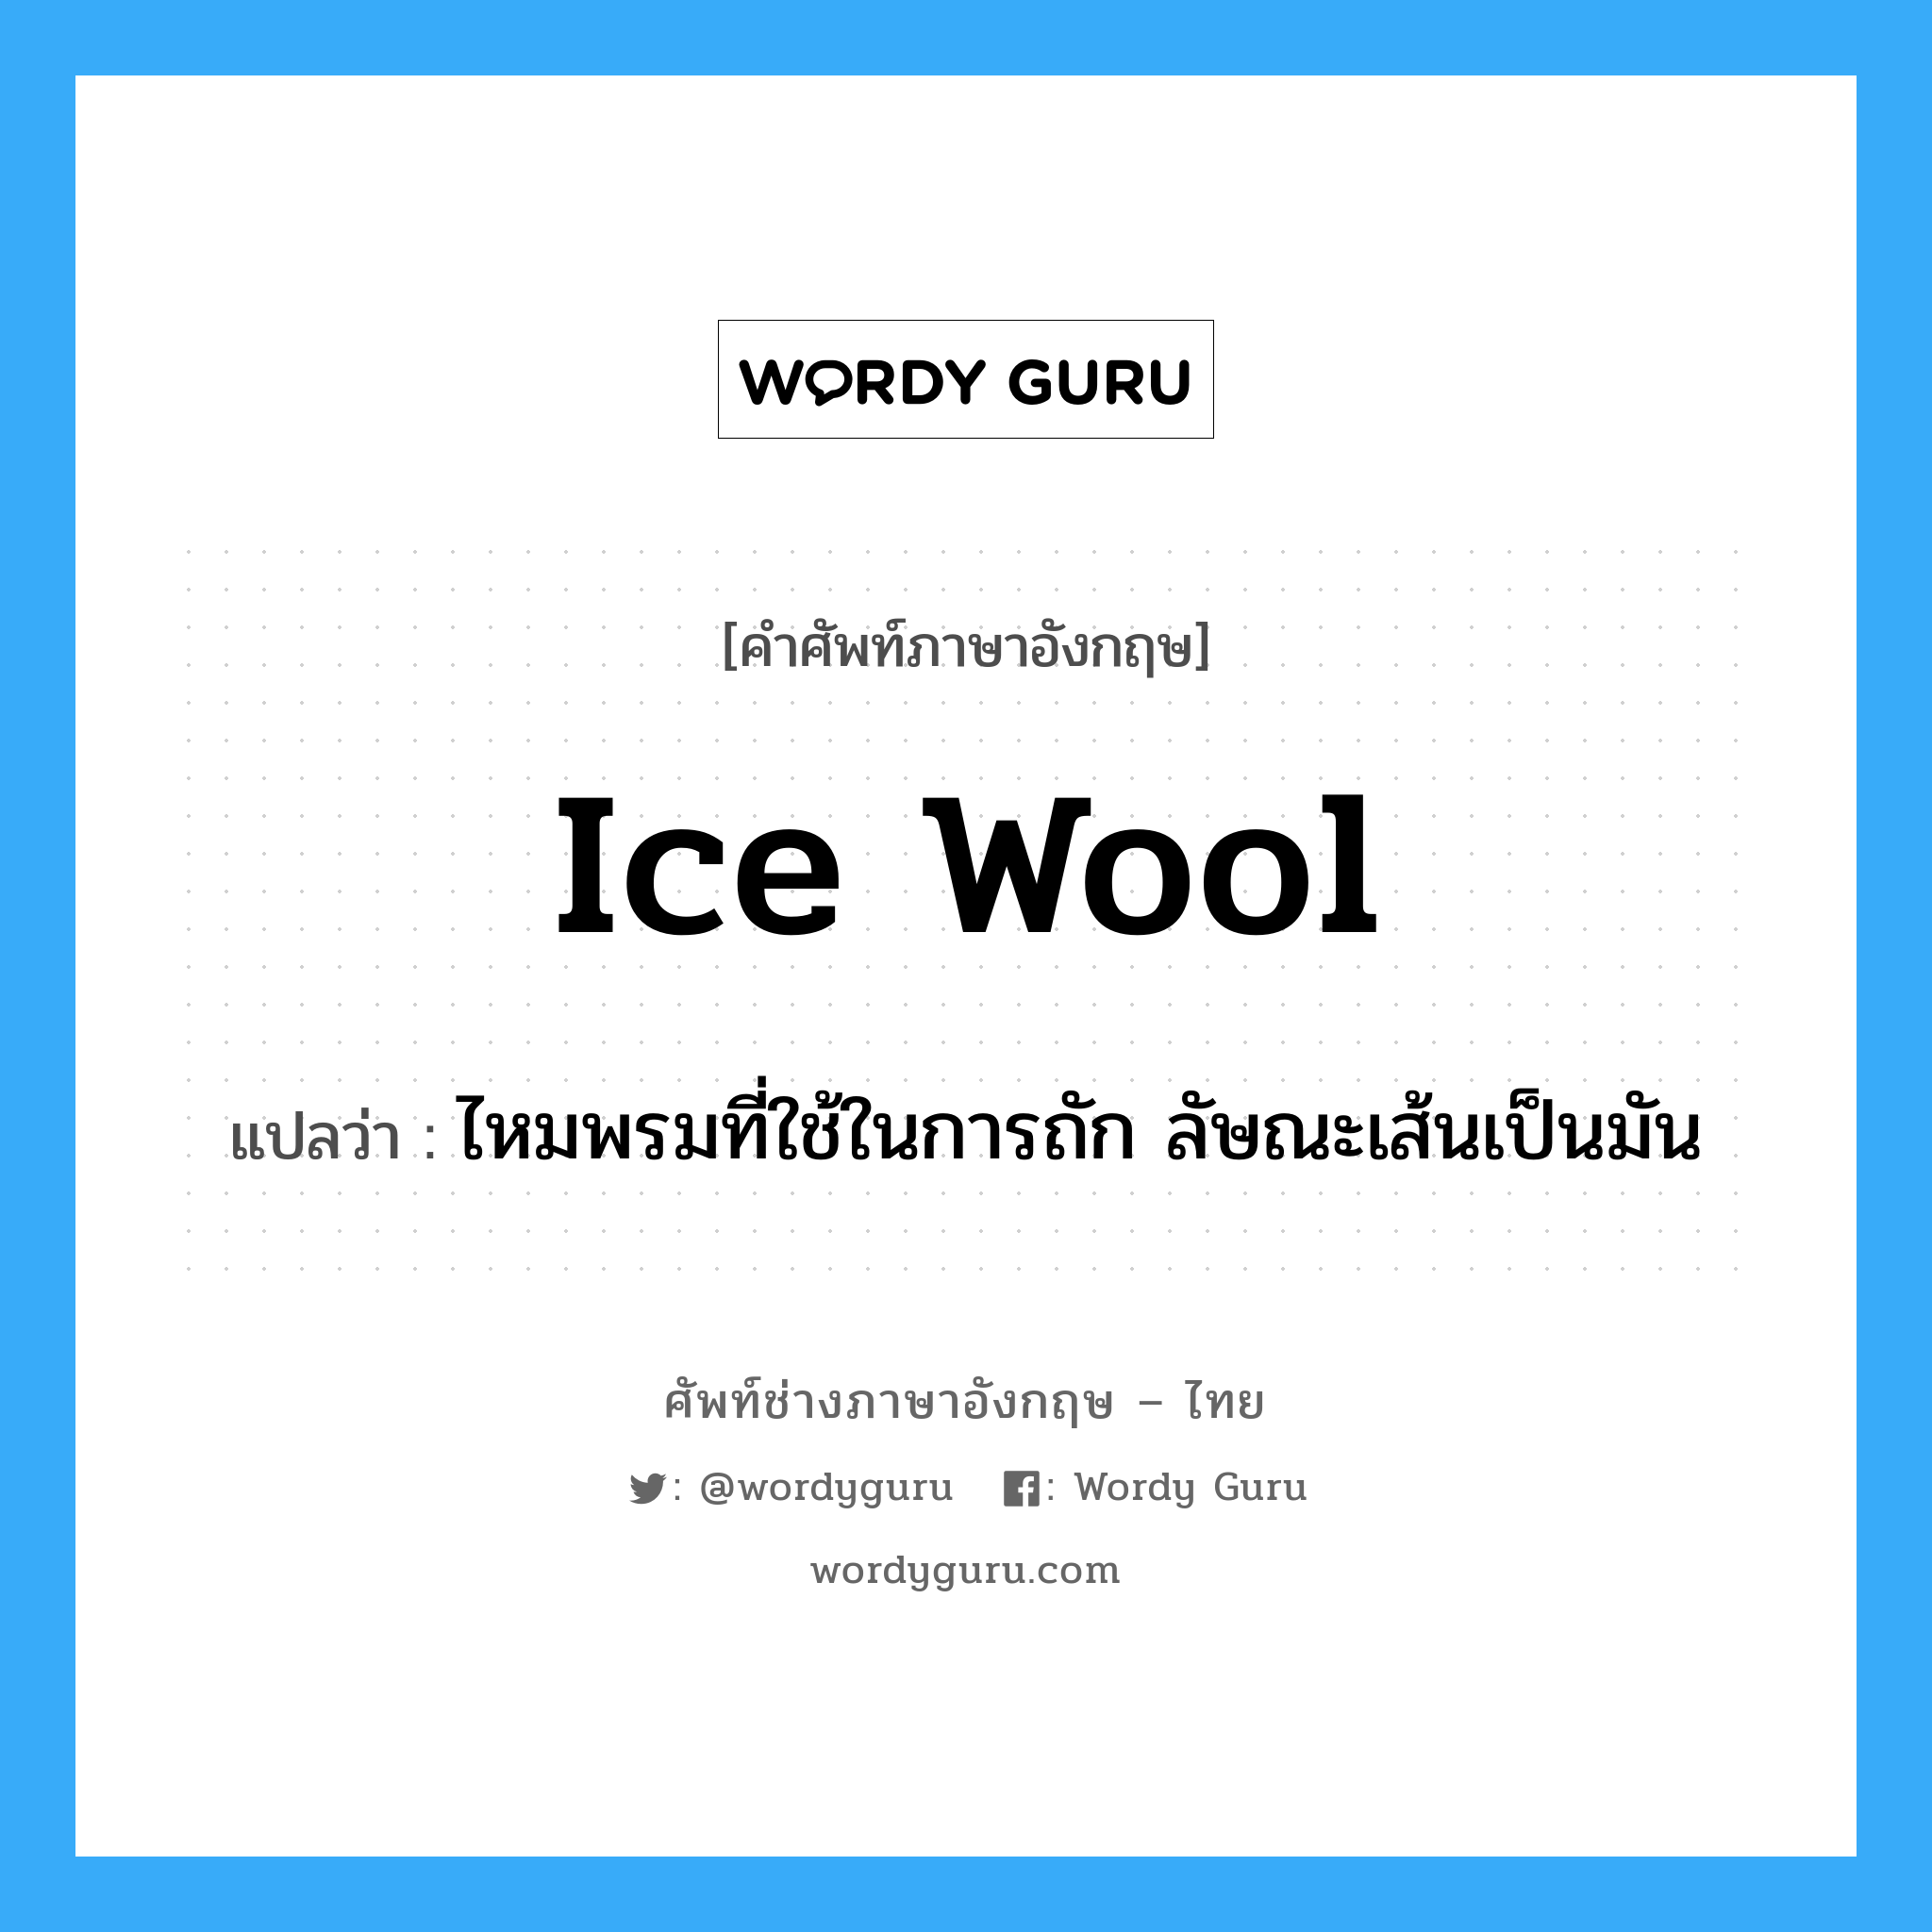 ไหมพรมที่ใช้ในการถัก ลัษณะเส้นเป็นมัน ภาษาอังกฤษ?, คำศัพท์ช่างภาษาอังกฤษ - ไทย ไหมพรมที่ใช้ในการถัก ลัษณะเส้นเป็นมัน คำศัพท์ภาษาอังกฤษ ไหมพรมที่ใช้ในการถัก ลัษณะเส้นเป็นมัน แปลว่า ice wool